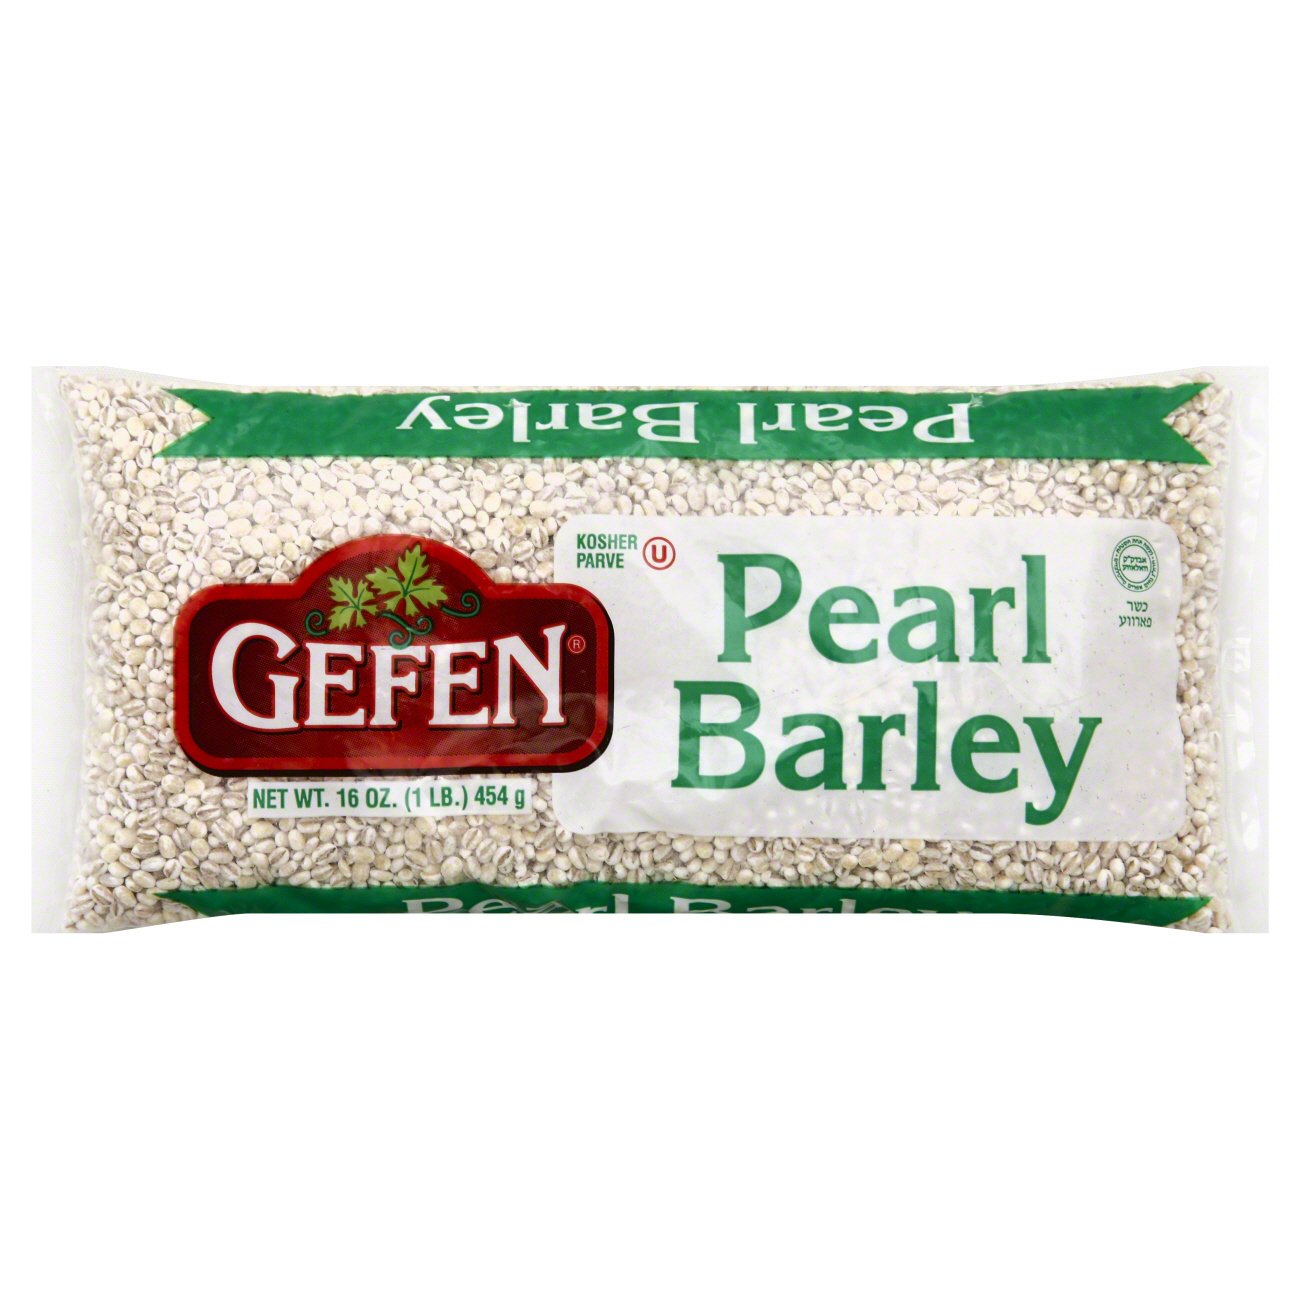 Gefen Pearl Barley - Shop Rice & Grains at H-E-B